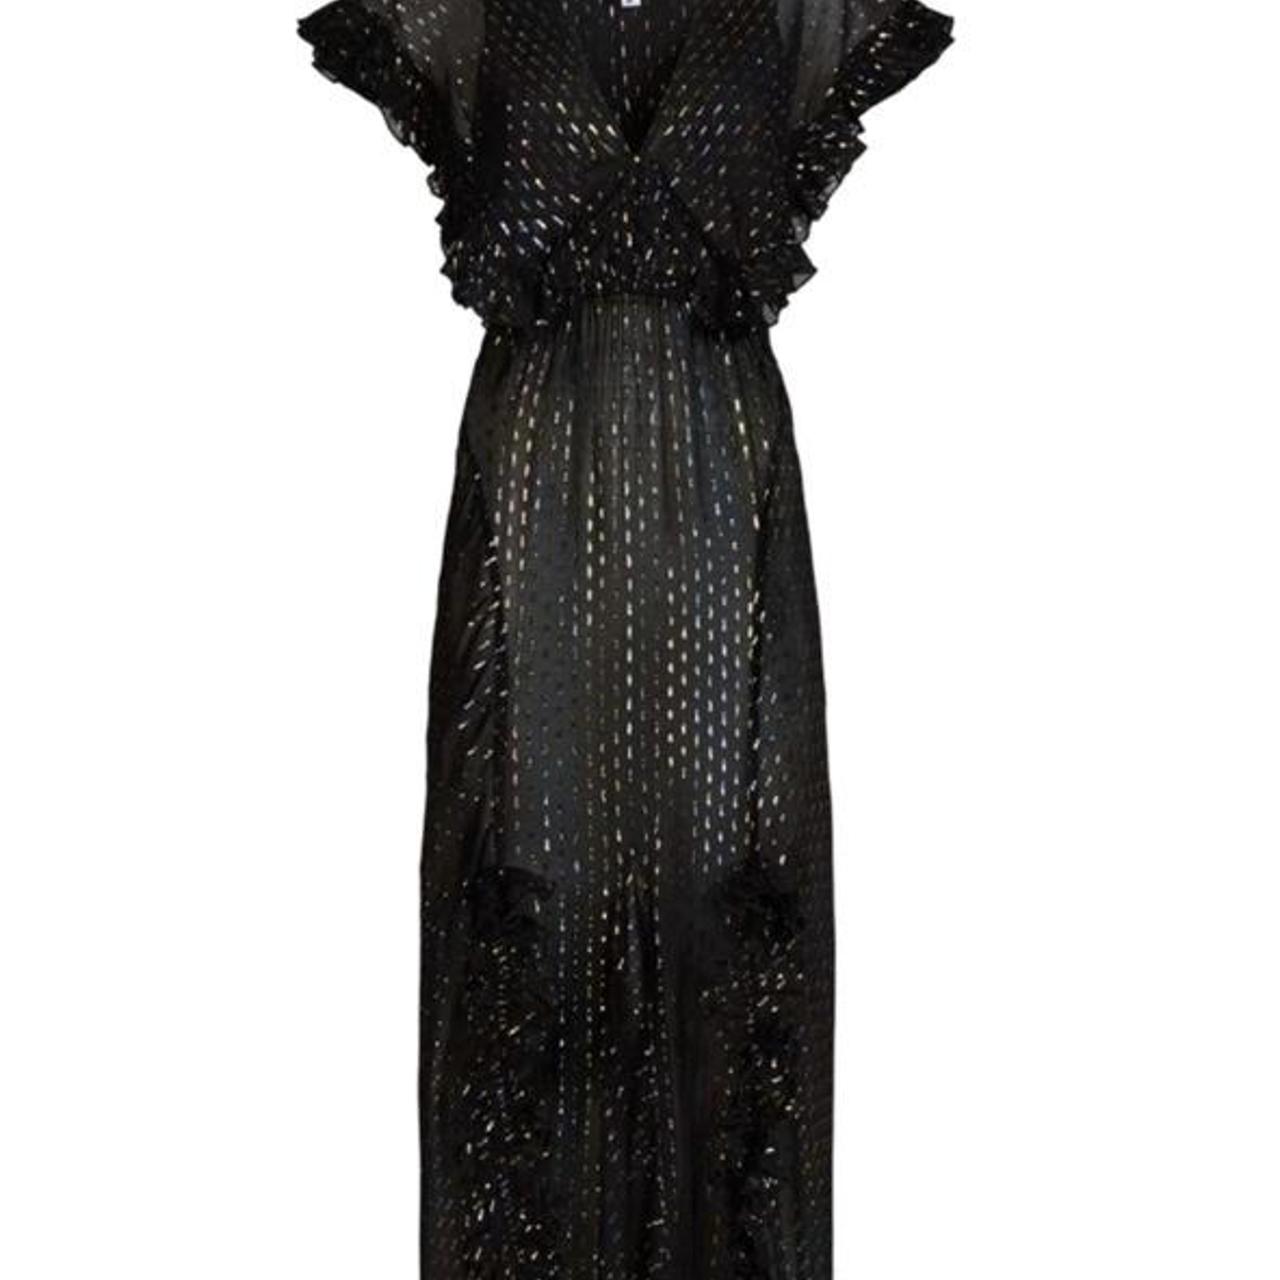 Incredible black sparkly Giorgia Rat & Boa Dress in... - Depop